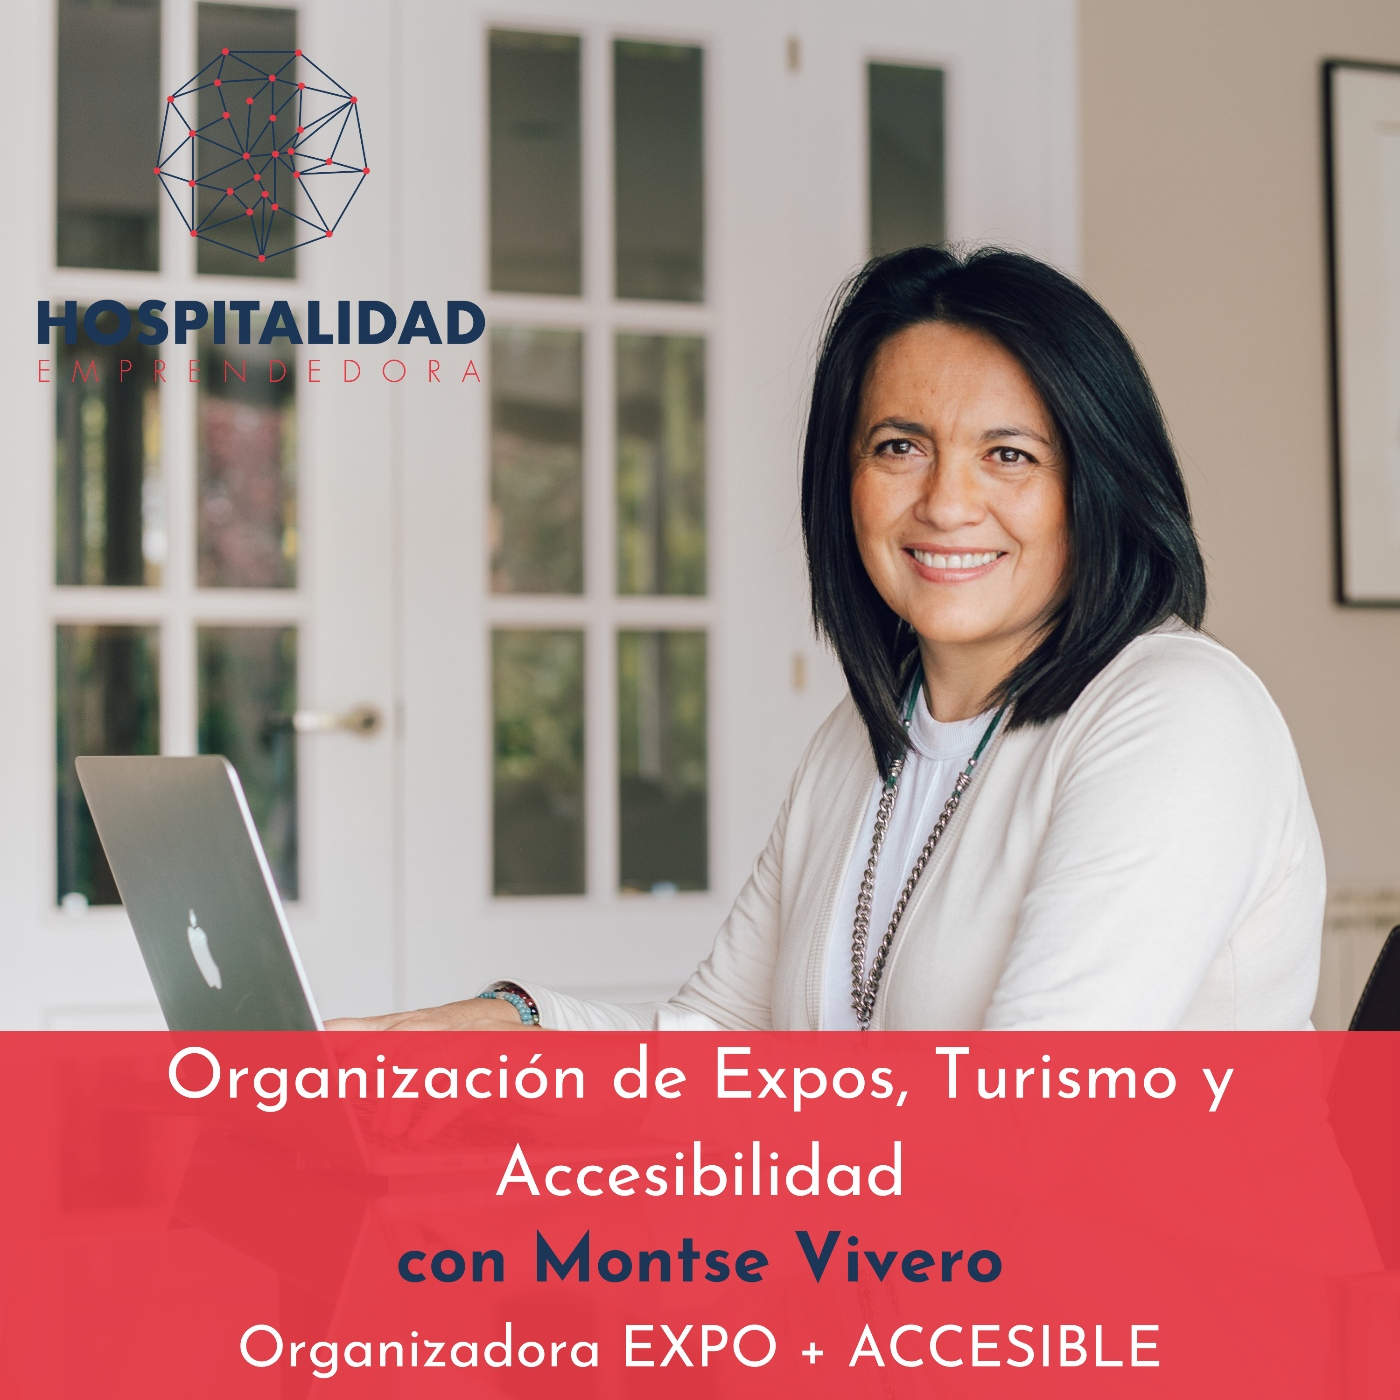 Organización de Expos. Turismo y Accesibilidad con Montse Vivero. Temp 6 Episodio 3